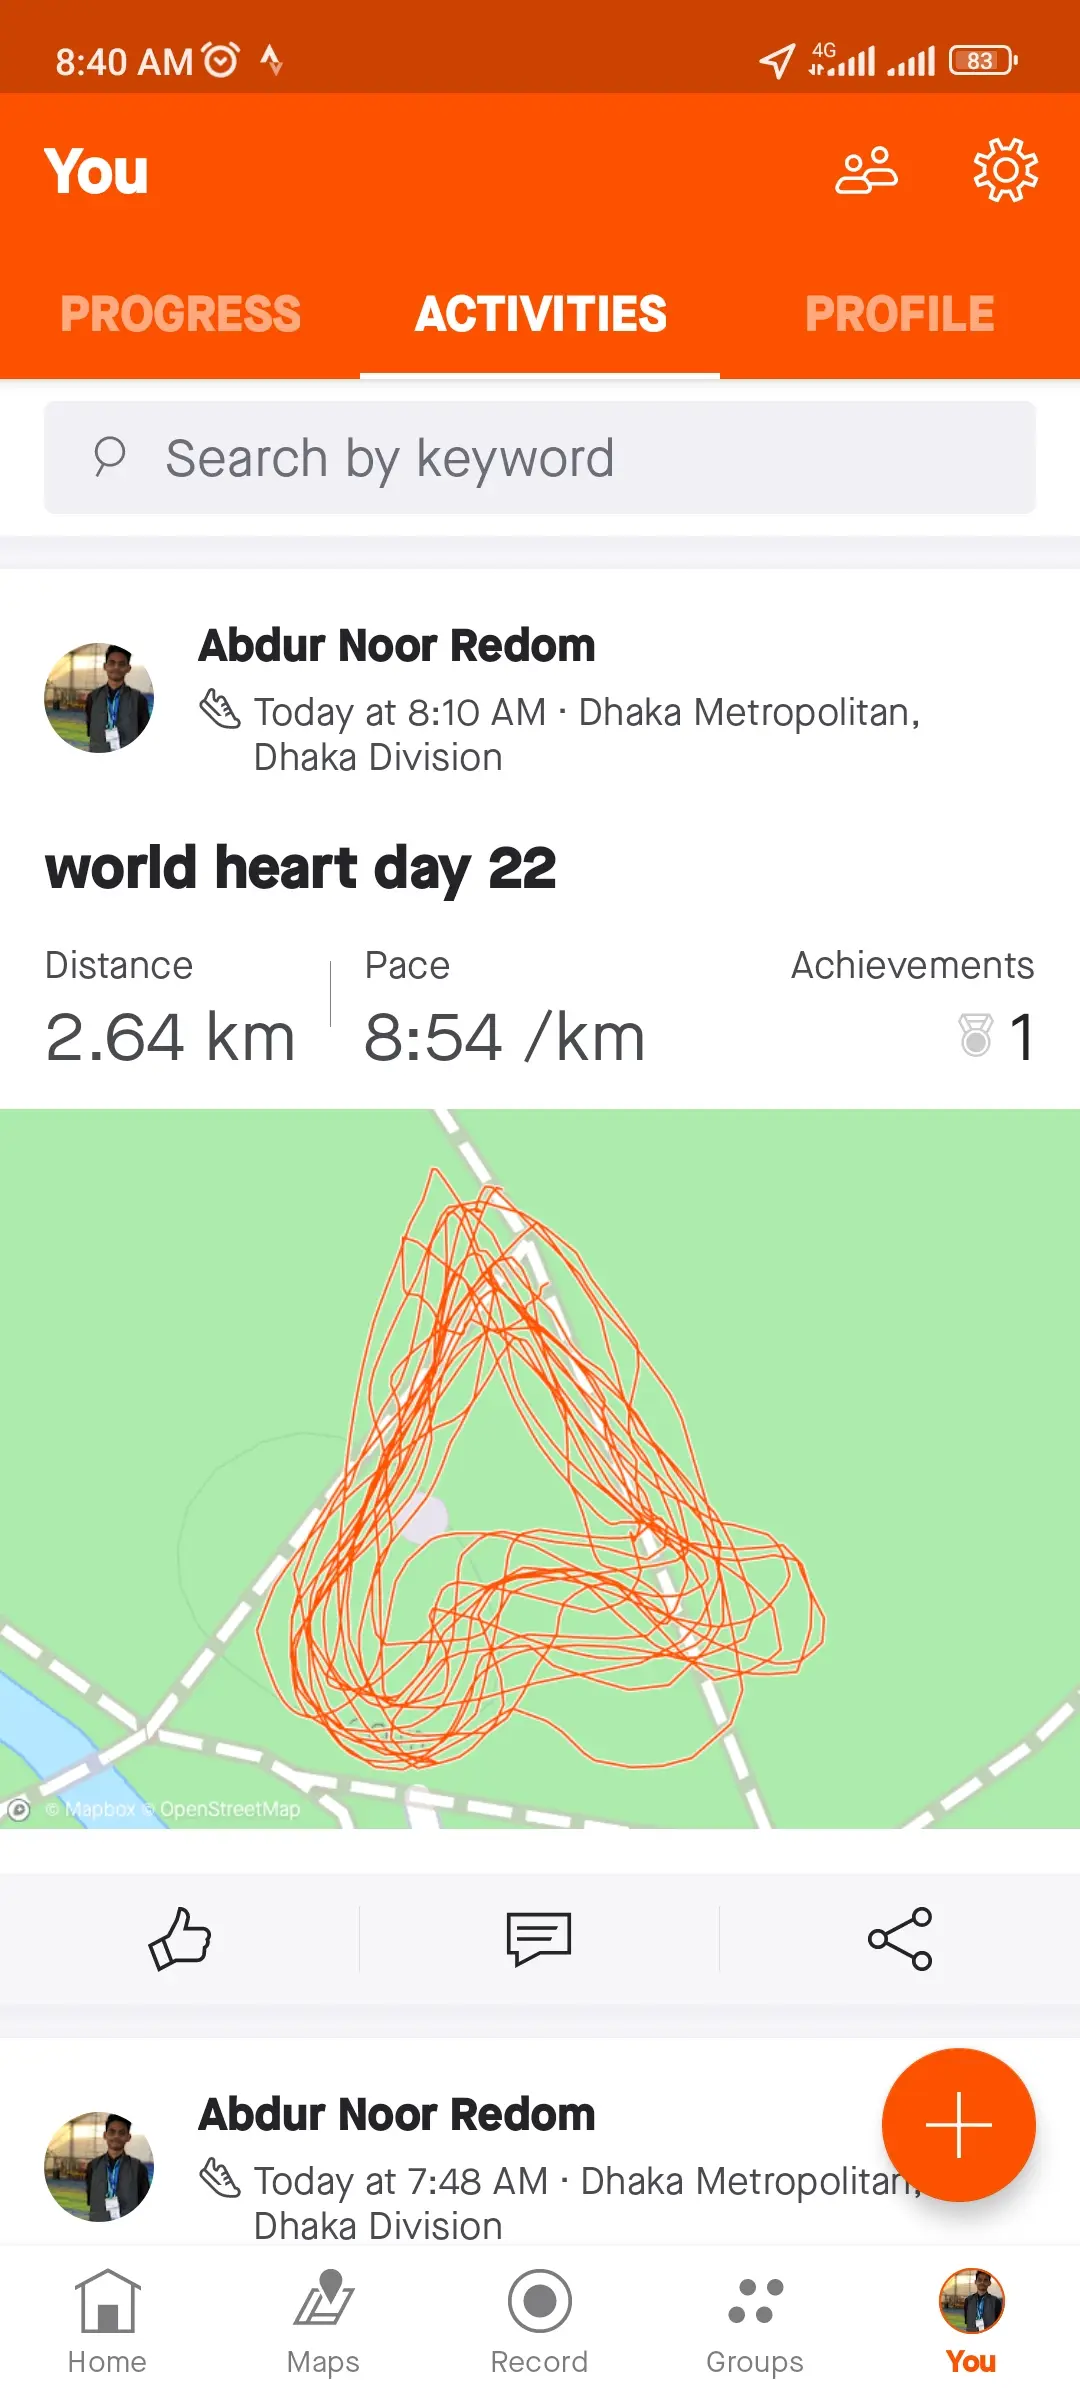 world heart day 22